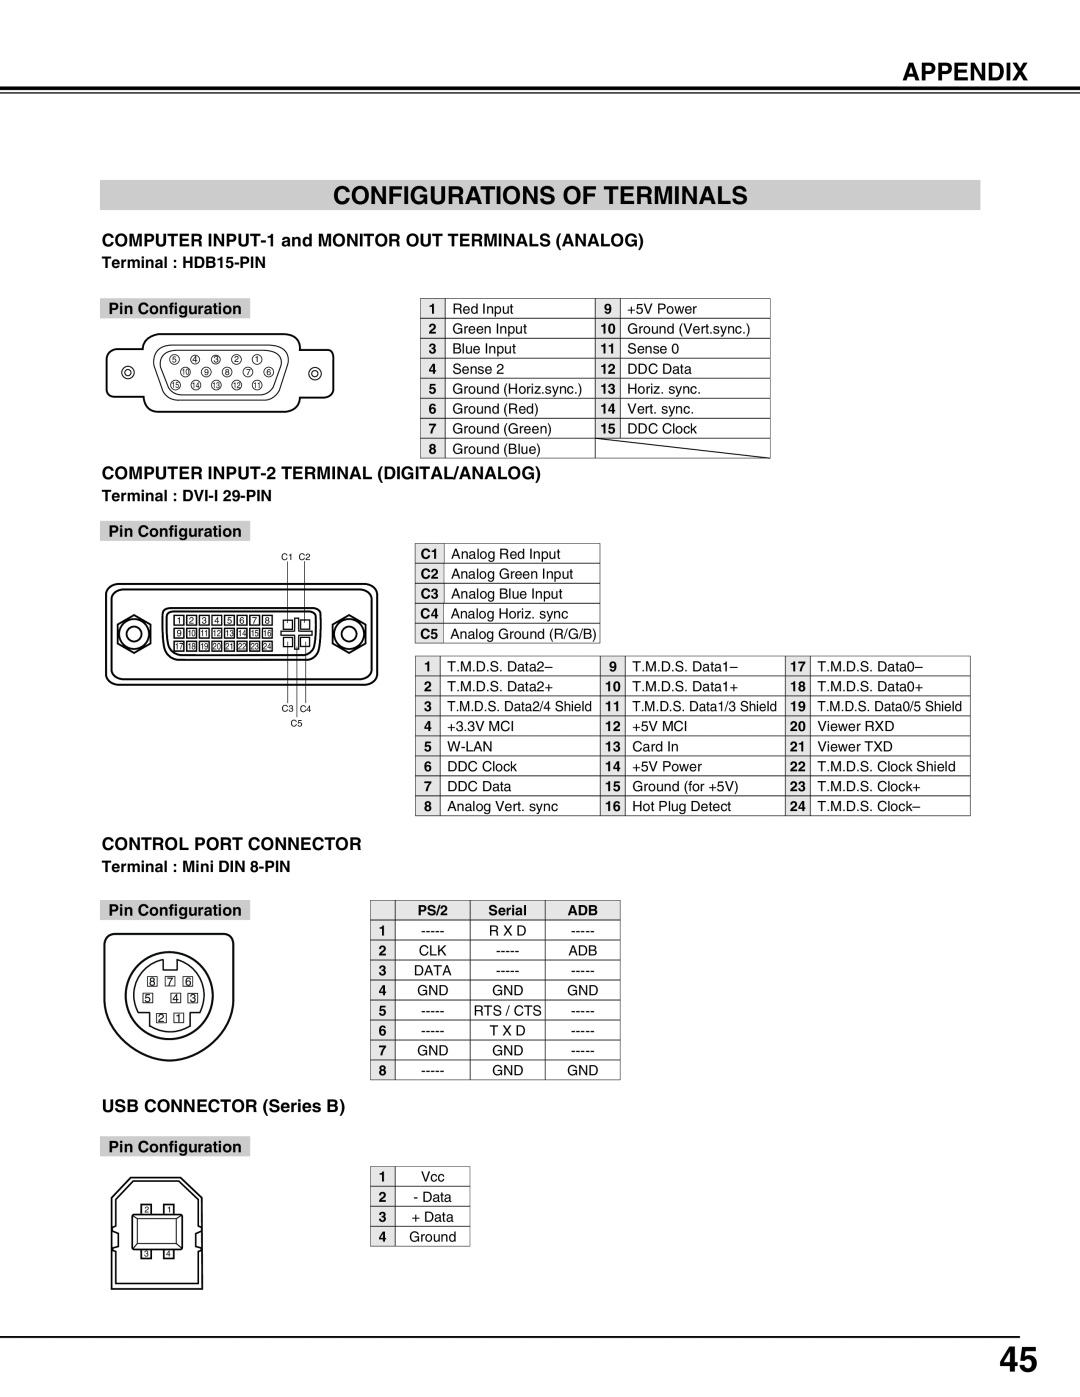 Sanyo PLC-XT16 Appendix Configurations Of Terminals, Terminal HDB15-PIN, Pin Configuration, Terminal Mini DIN 8-PIN 